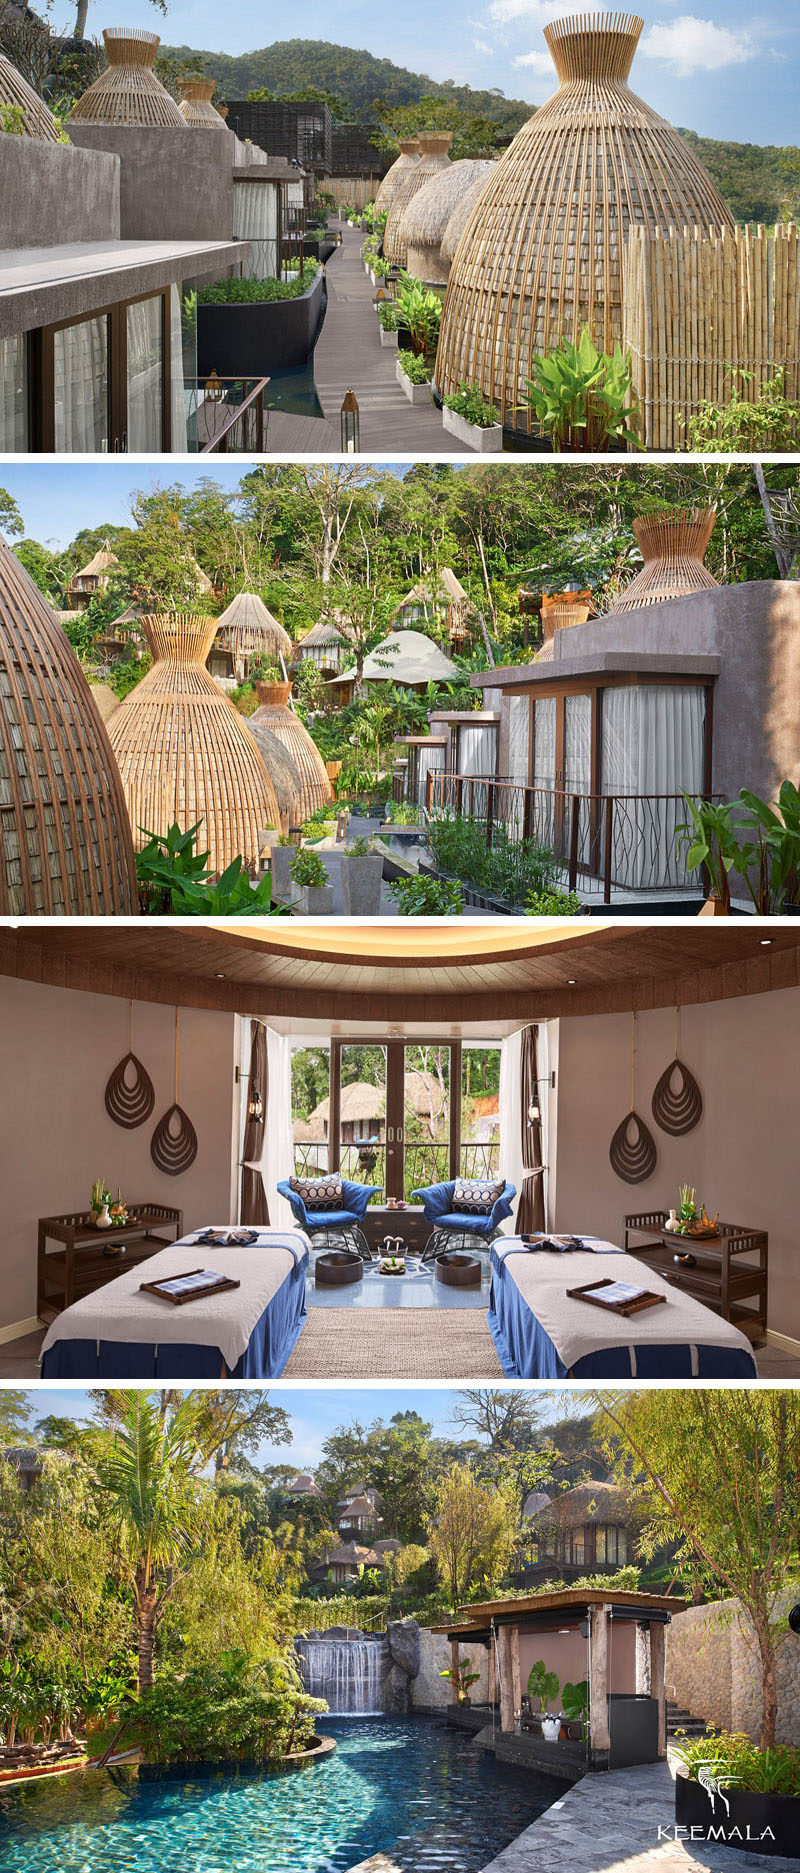 Идея для путешествий - курорт Keemala на Пхукете, Таиланд, предлагает роскошные удобства, включая спа и большой бассейн с баром у кромки бассейна.